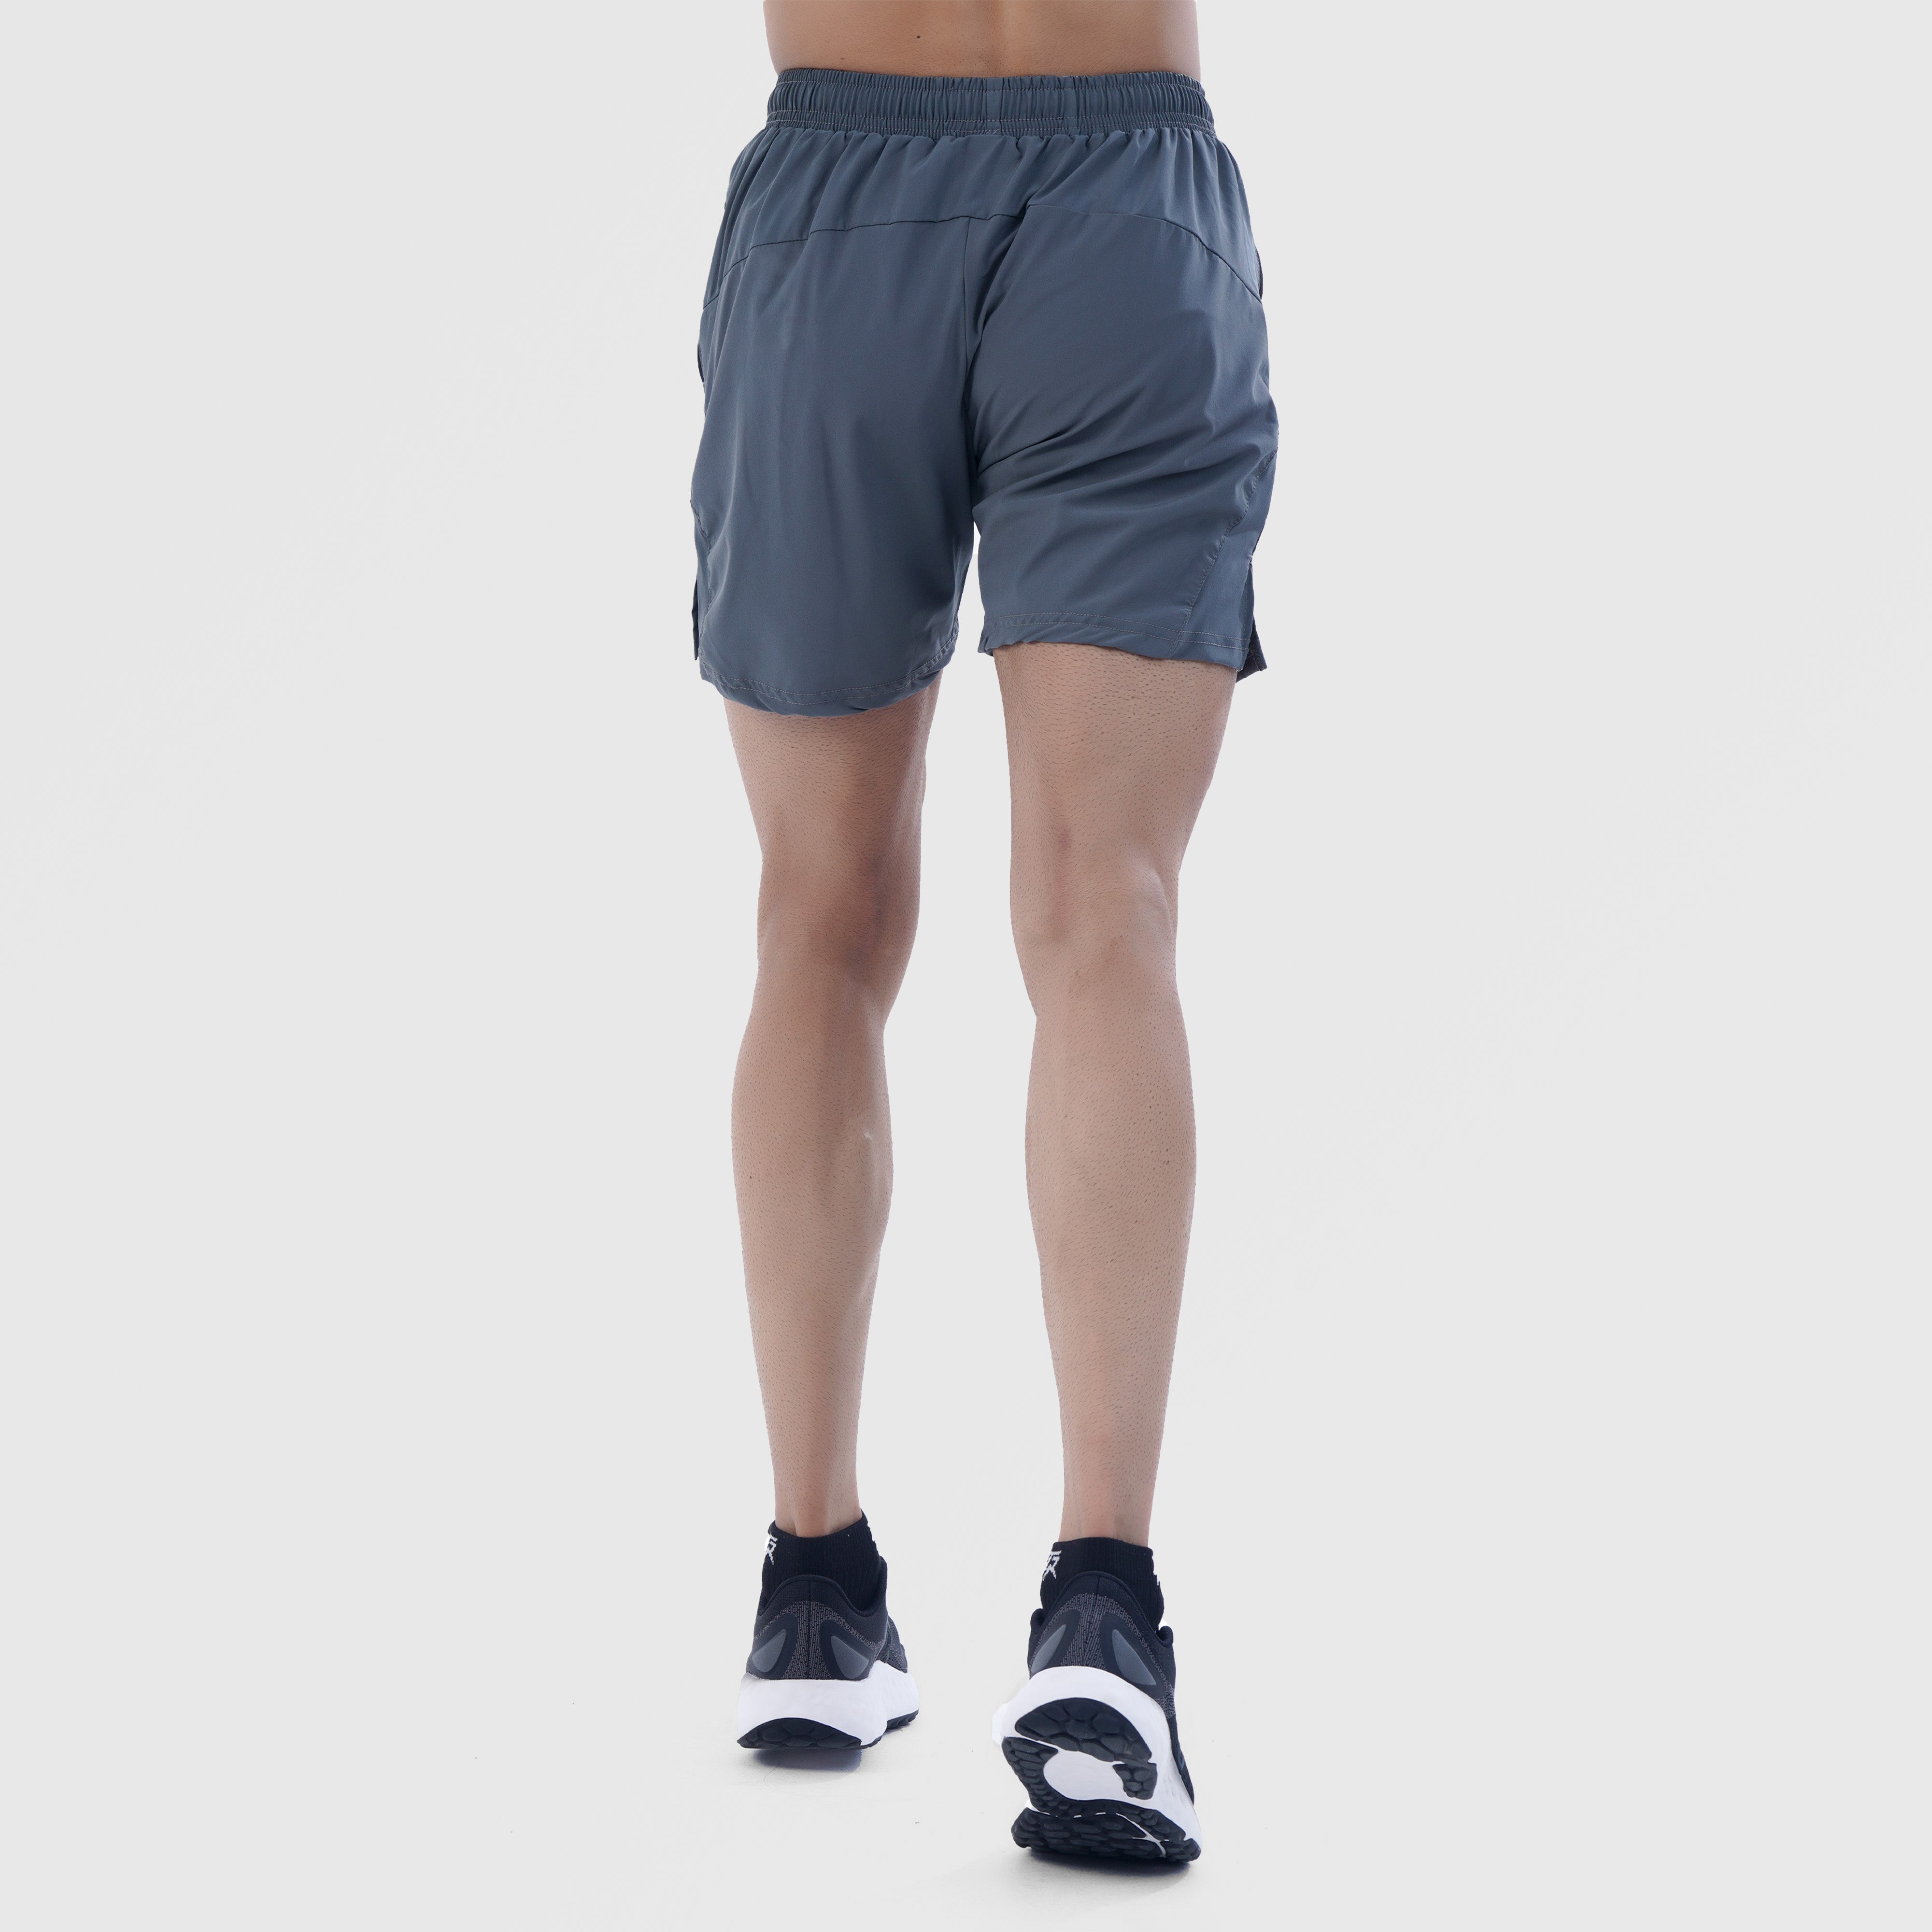 AirFlow Shorts (Grey)